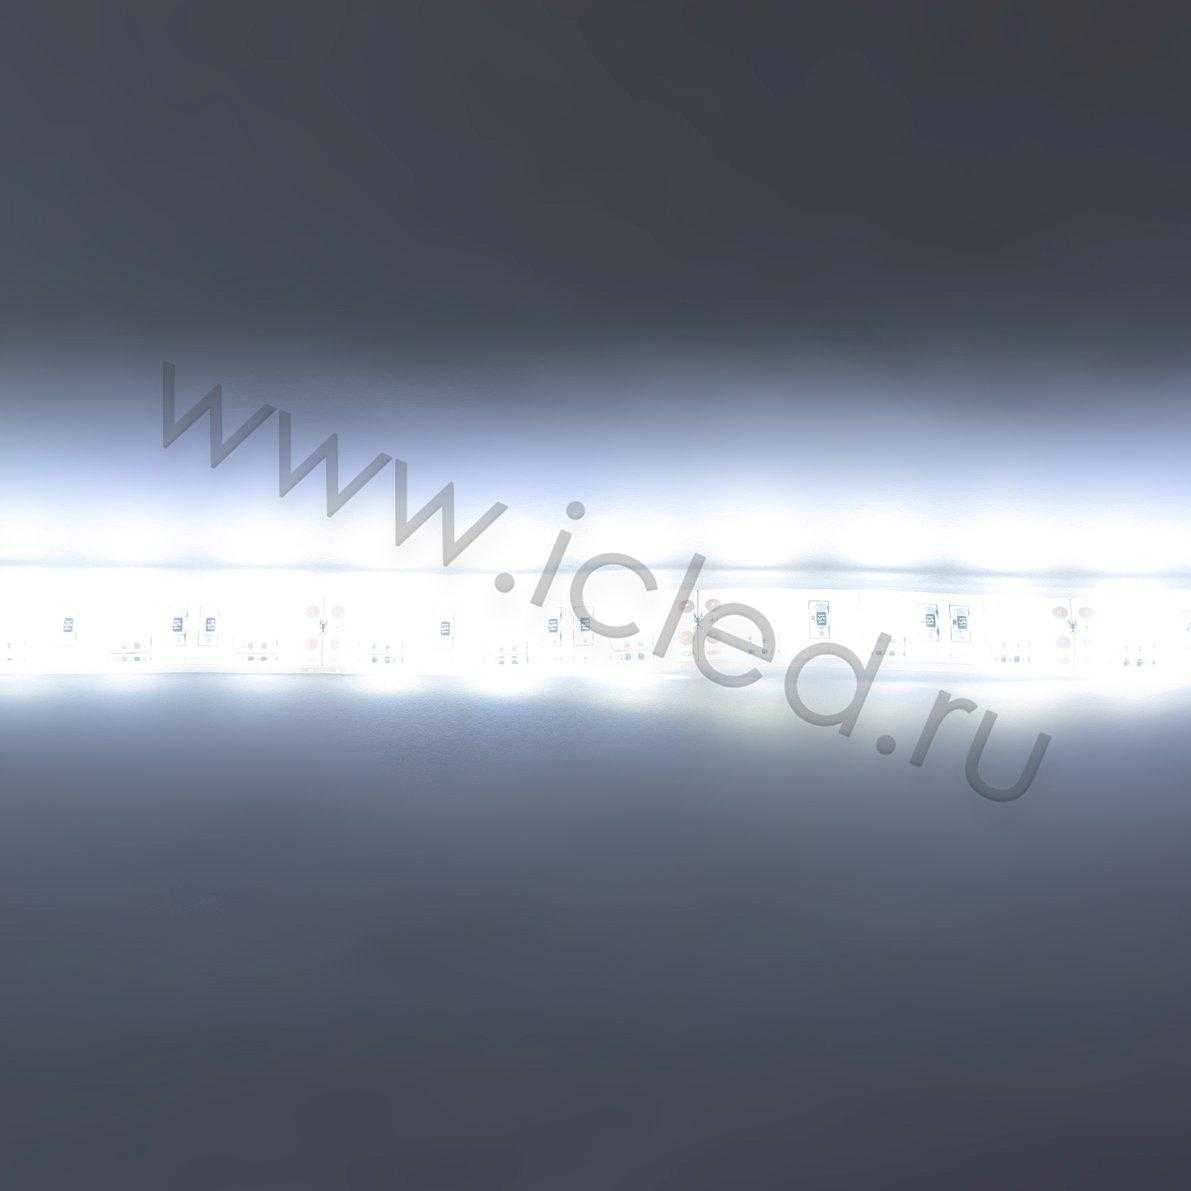 Влагозащищенные светодиодные ленты Светодиодная лента Standart PRO class, 5050, 60led/m, White, 12V, IP68 Icled